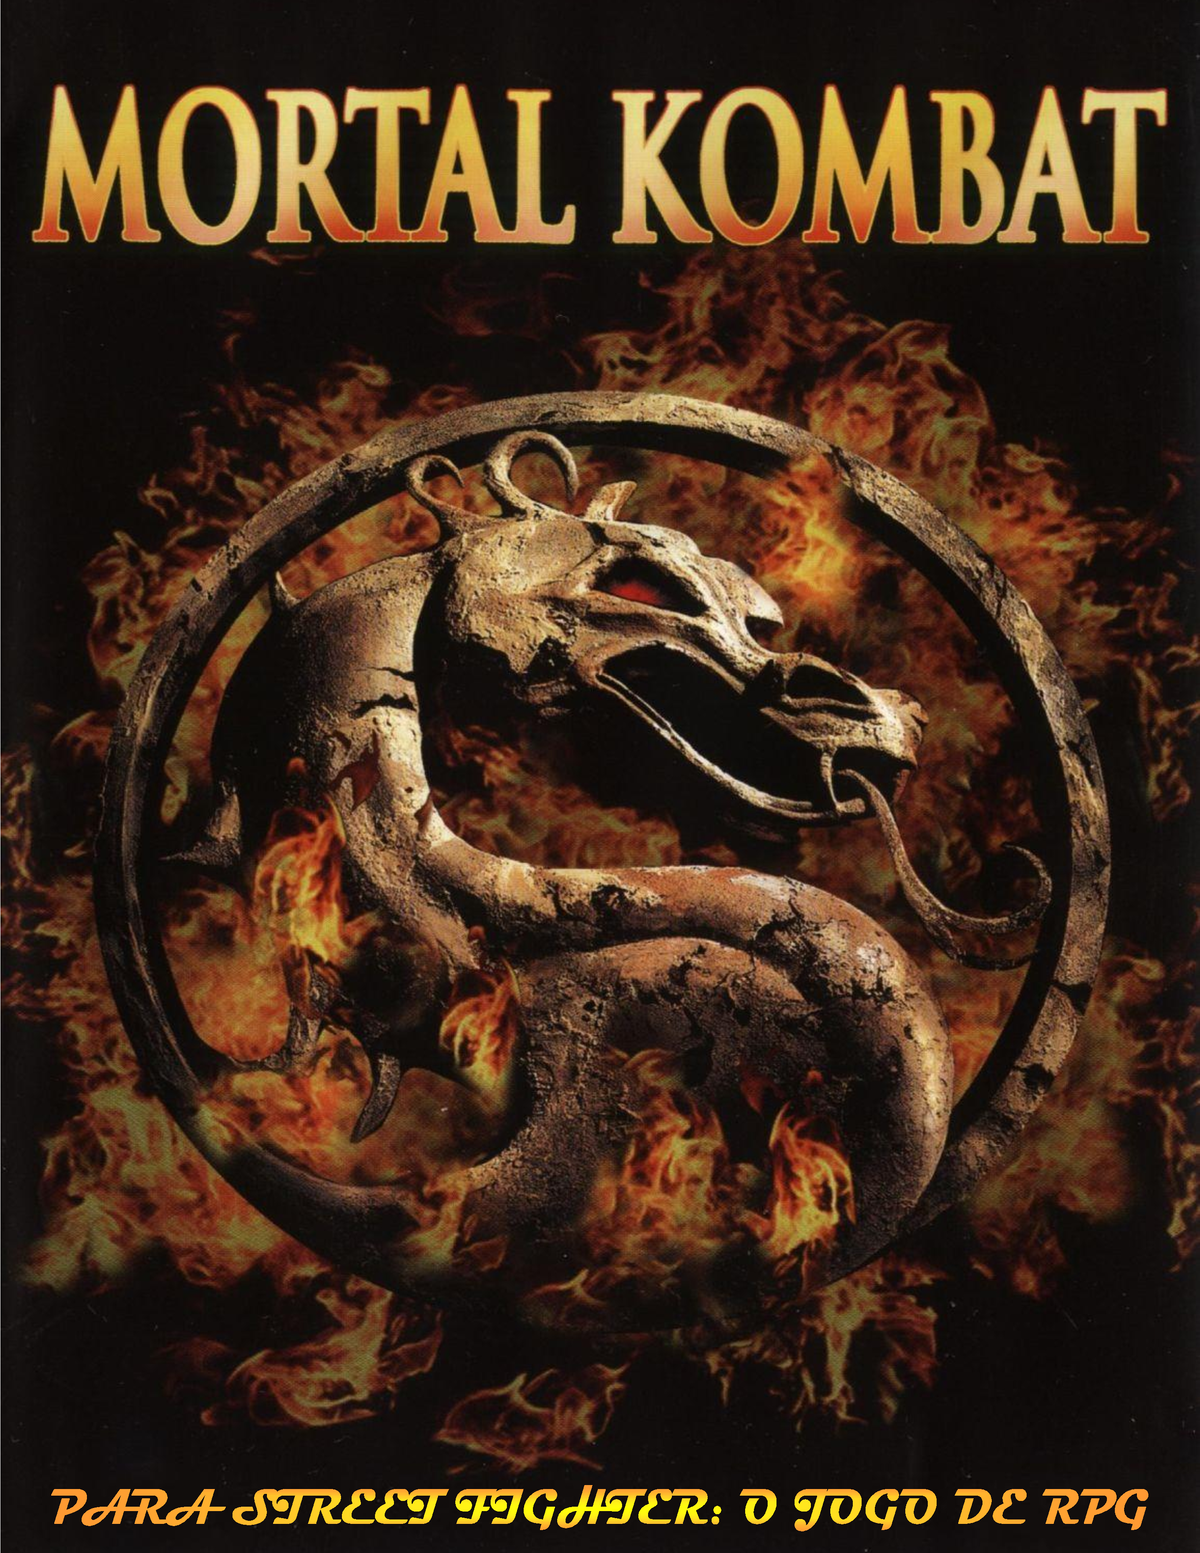 Mortal Kombat chega aos cinemas com aventura sobre a paz na Terra